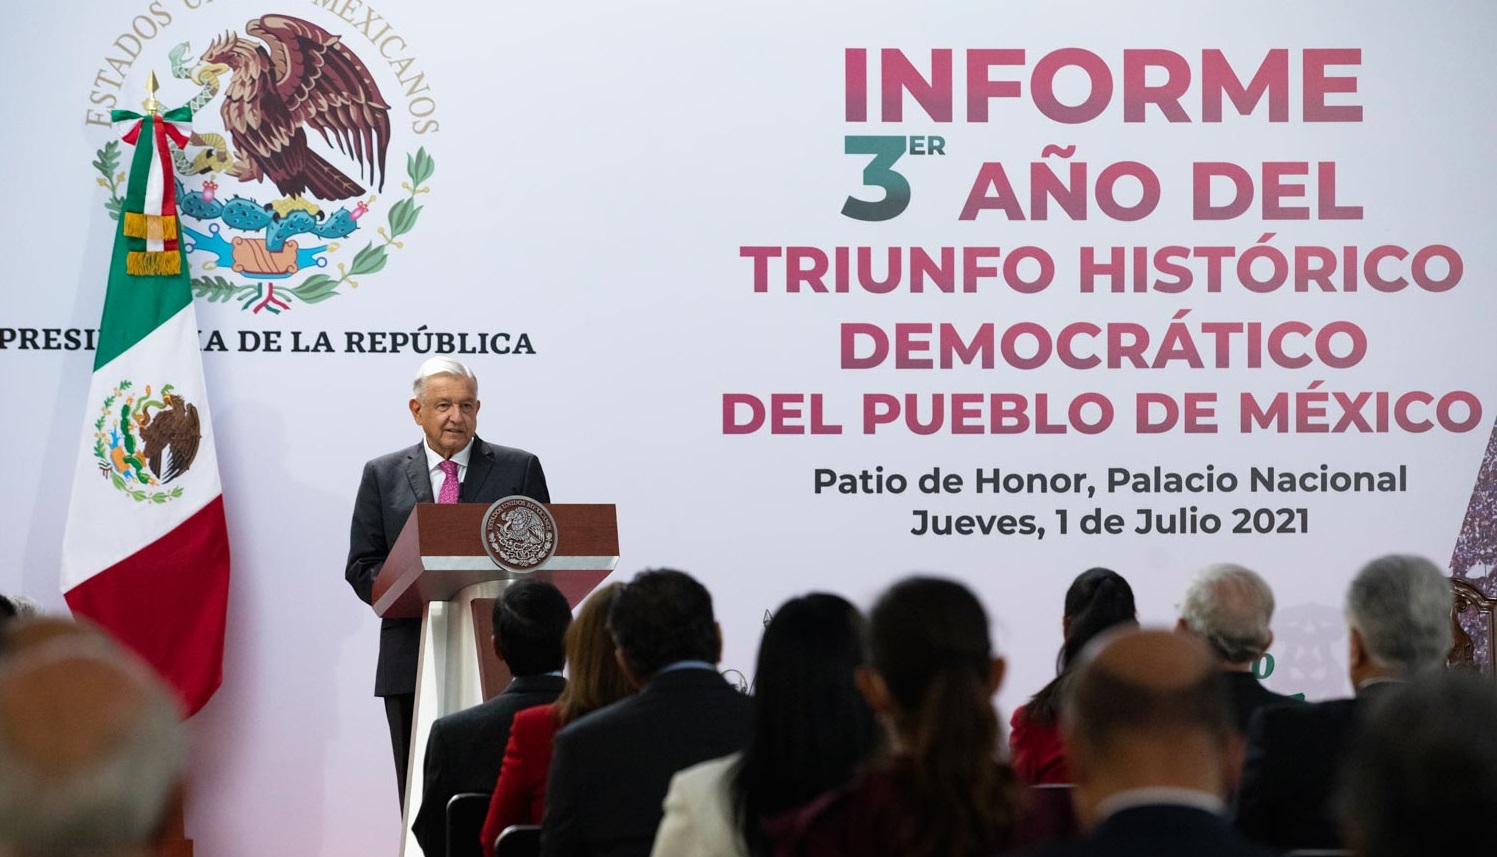 Cuarta Transformacion tiene aprobacion del pueblo de Mexico afirma Lopez Obrador en tercer aniversario del triunfo democratico